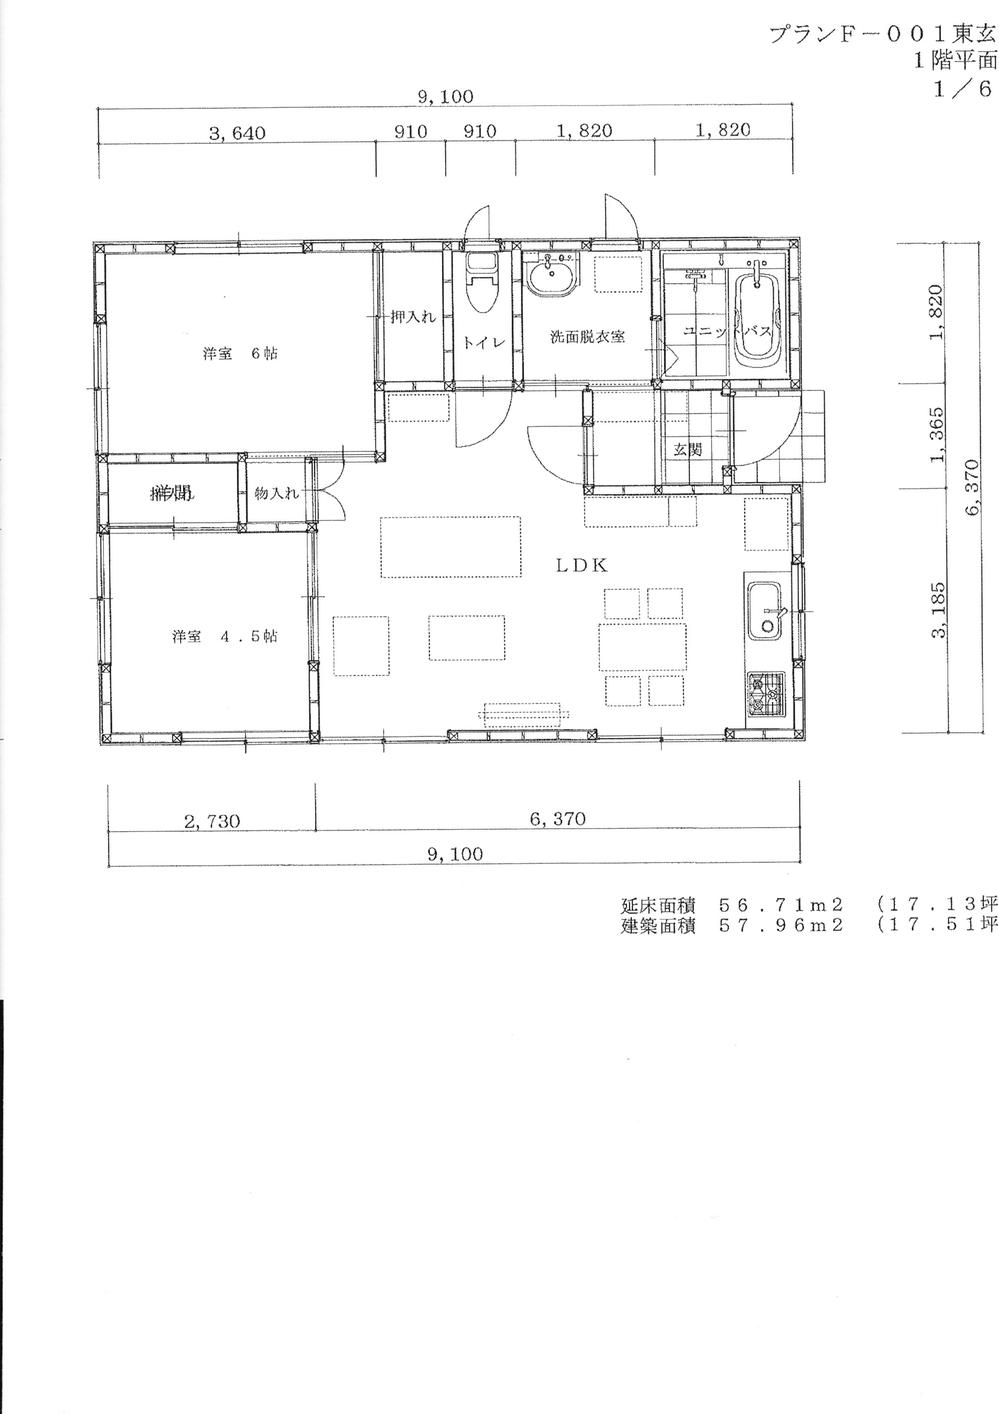 Floor plan. 14.8 million yen, 2LDK, Land area 830 sq m , Building area 56.71 sq m